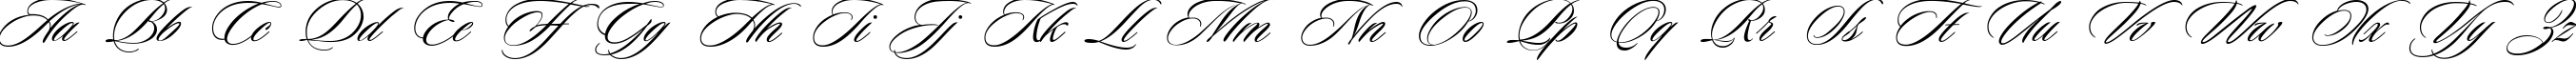 Пример написания английского алфавита шрифтом Ceremonious One